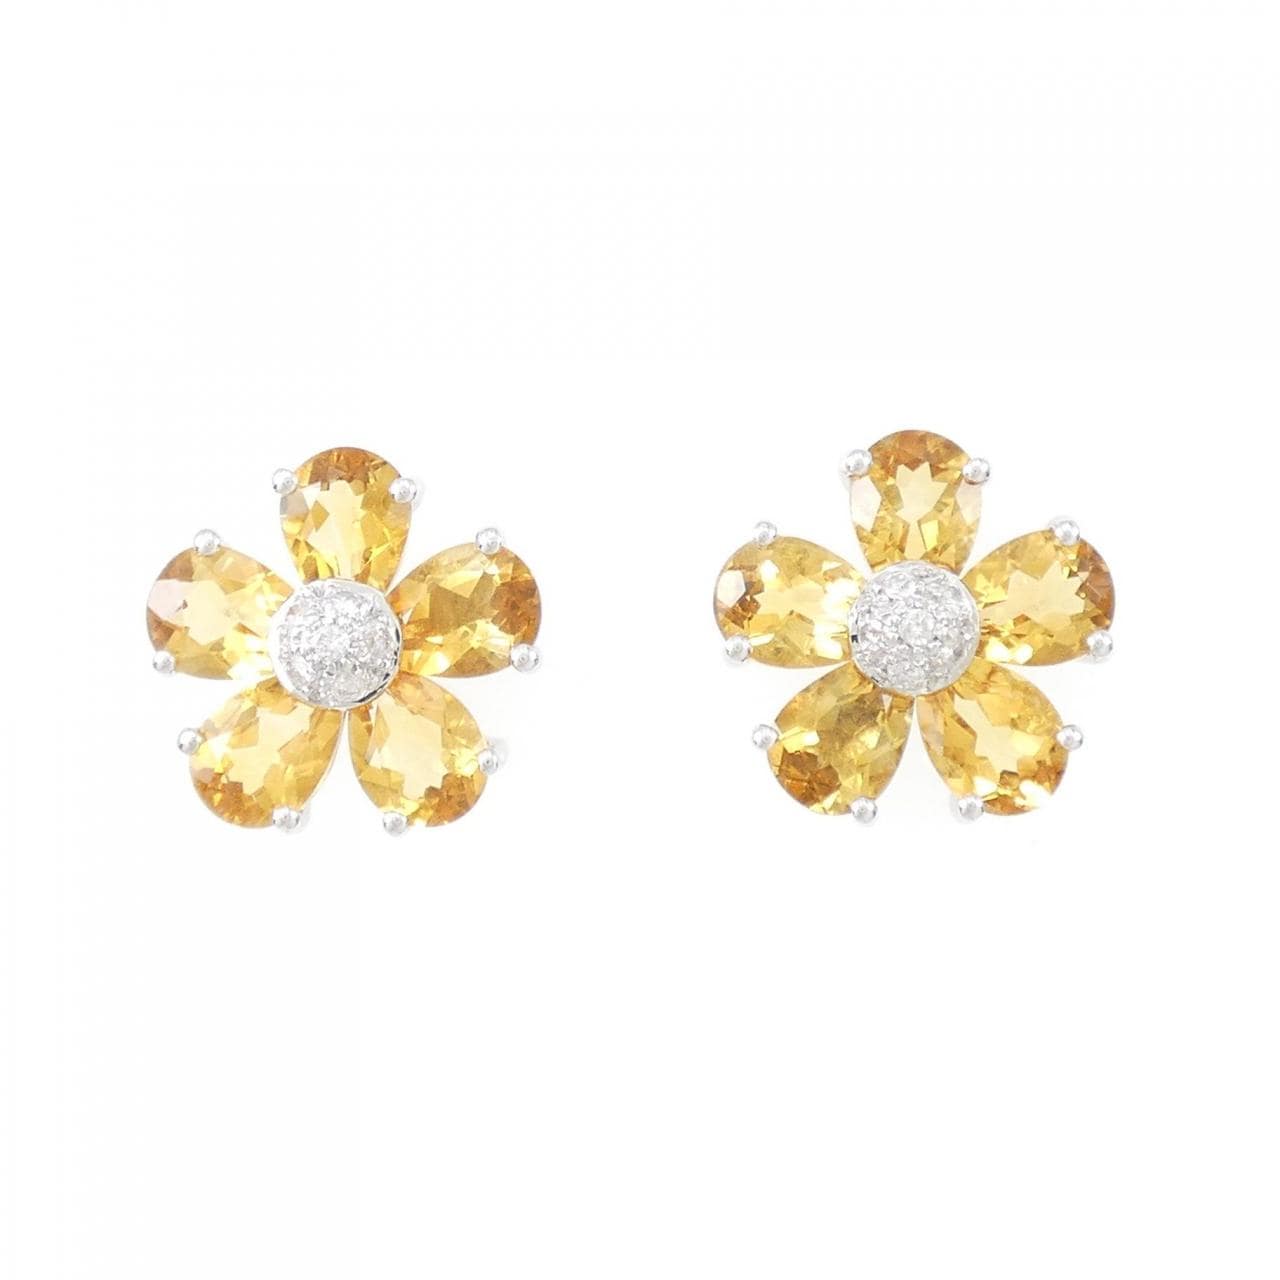 K18WG flower citrine earrings 6.14CT